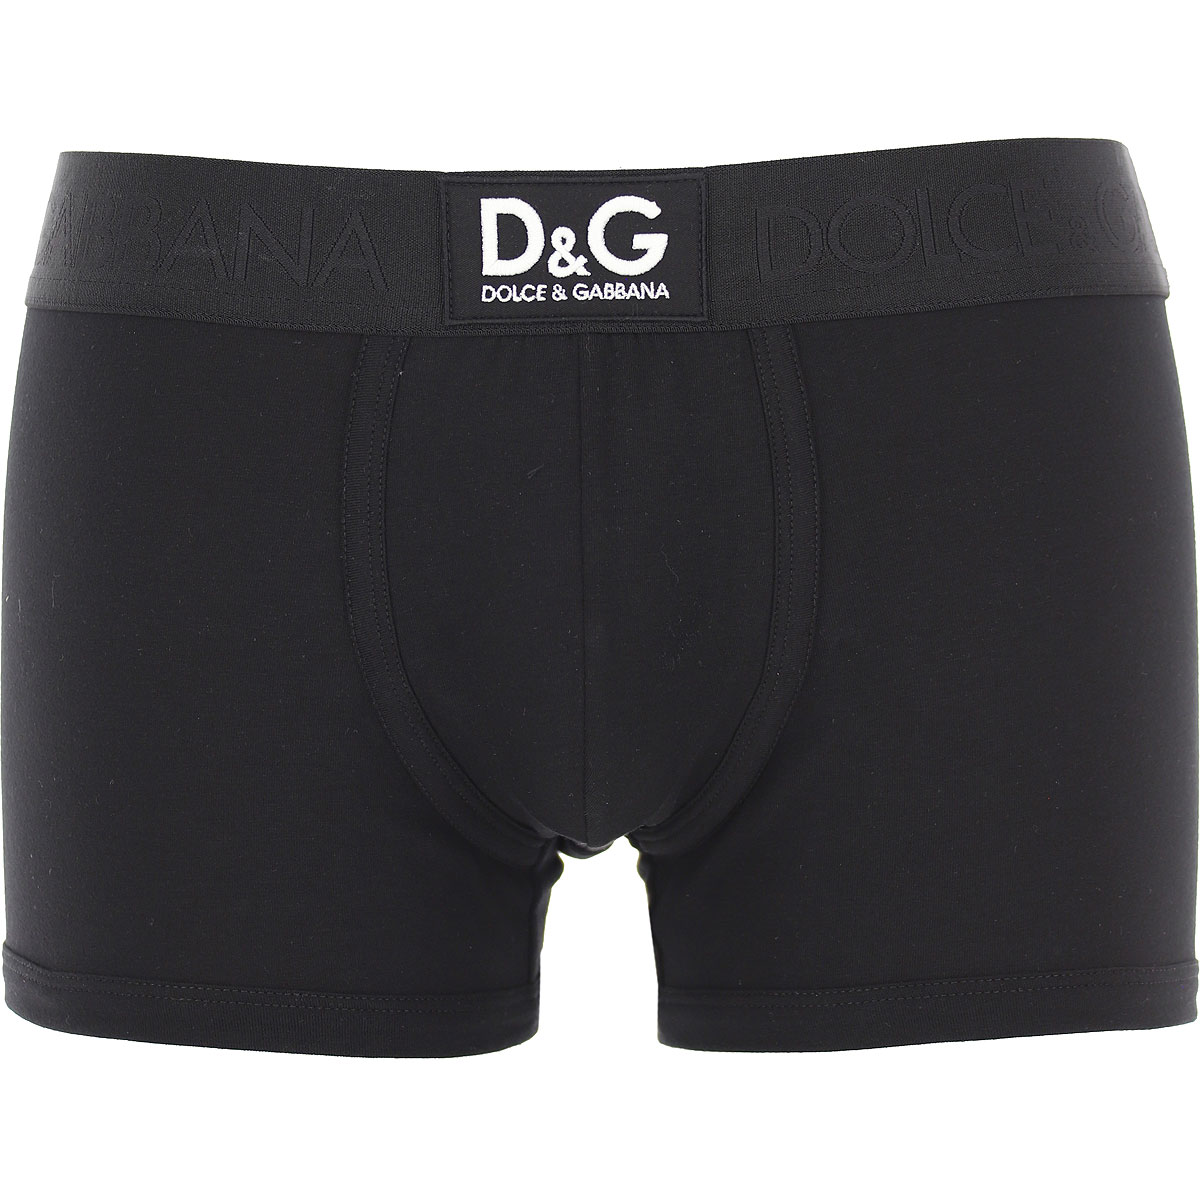 Mens Underwear Dolce & Gabbana, Style code: m4d36j-ouaig-n0000